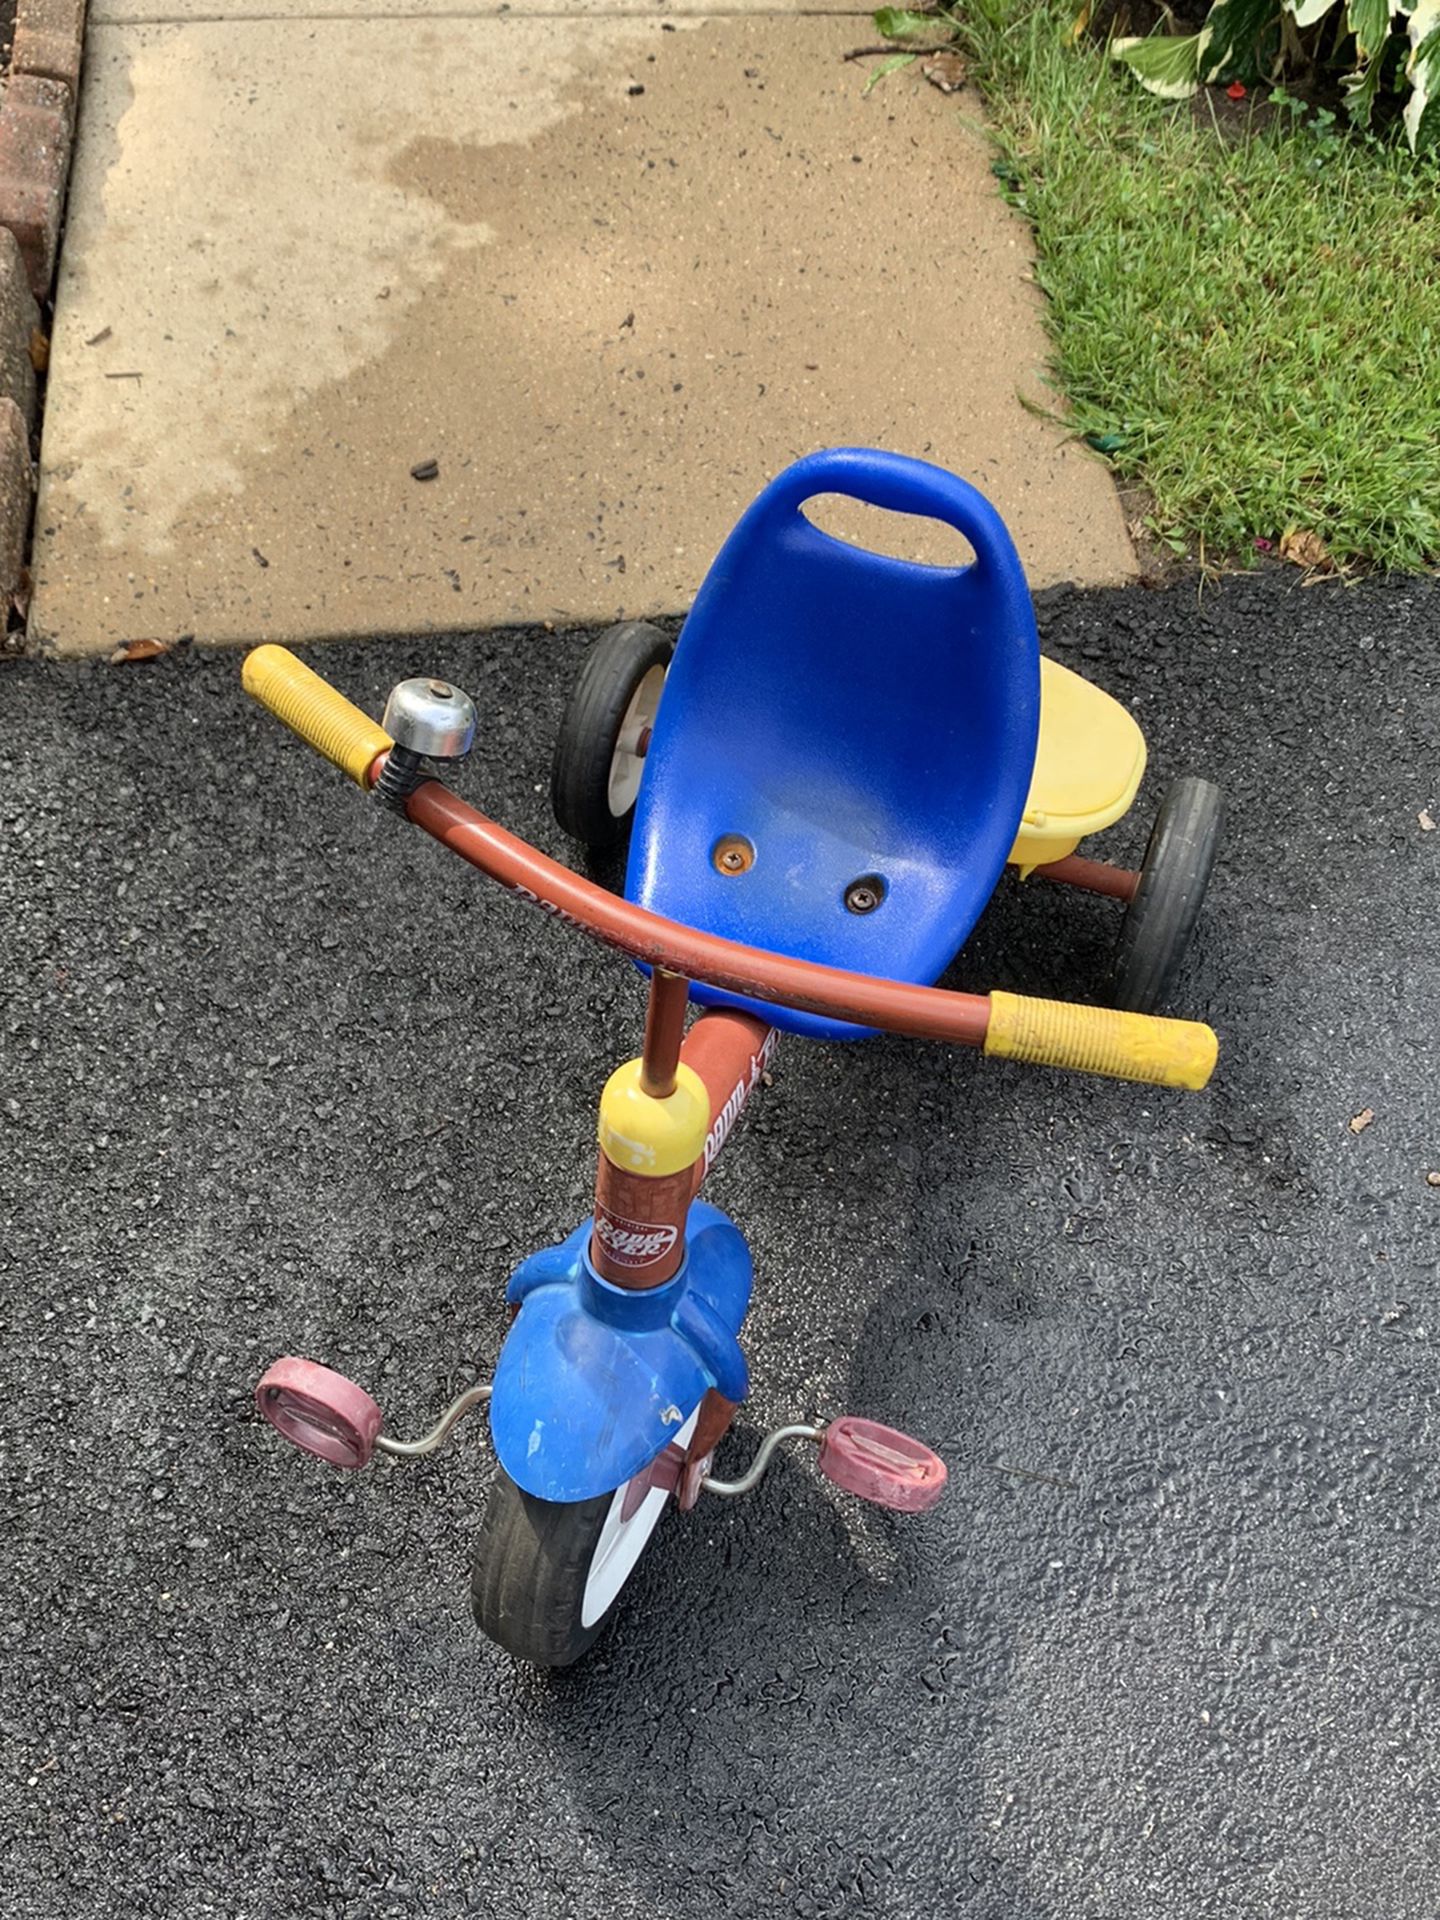 Baby Bike $5